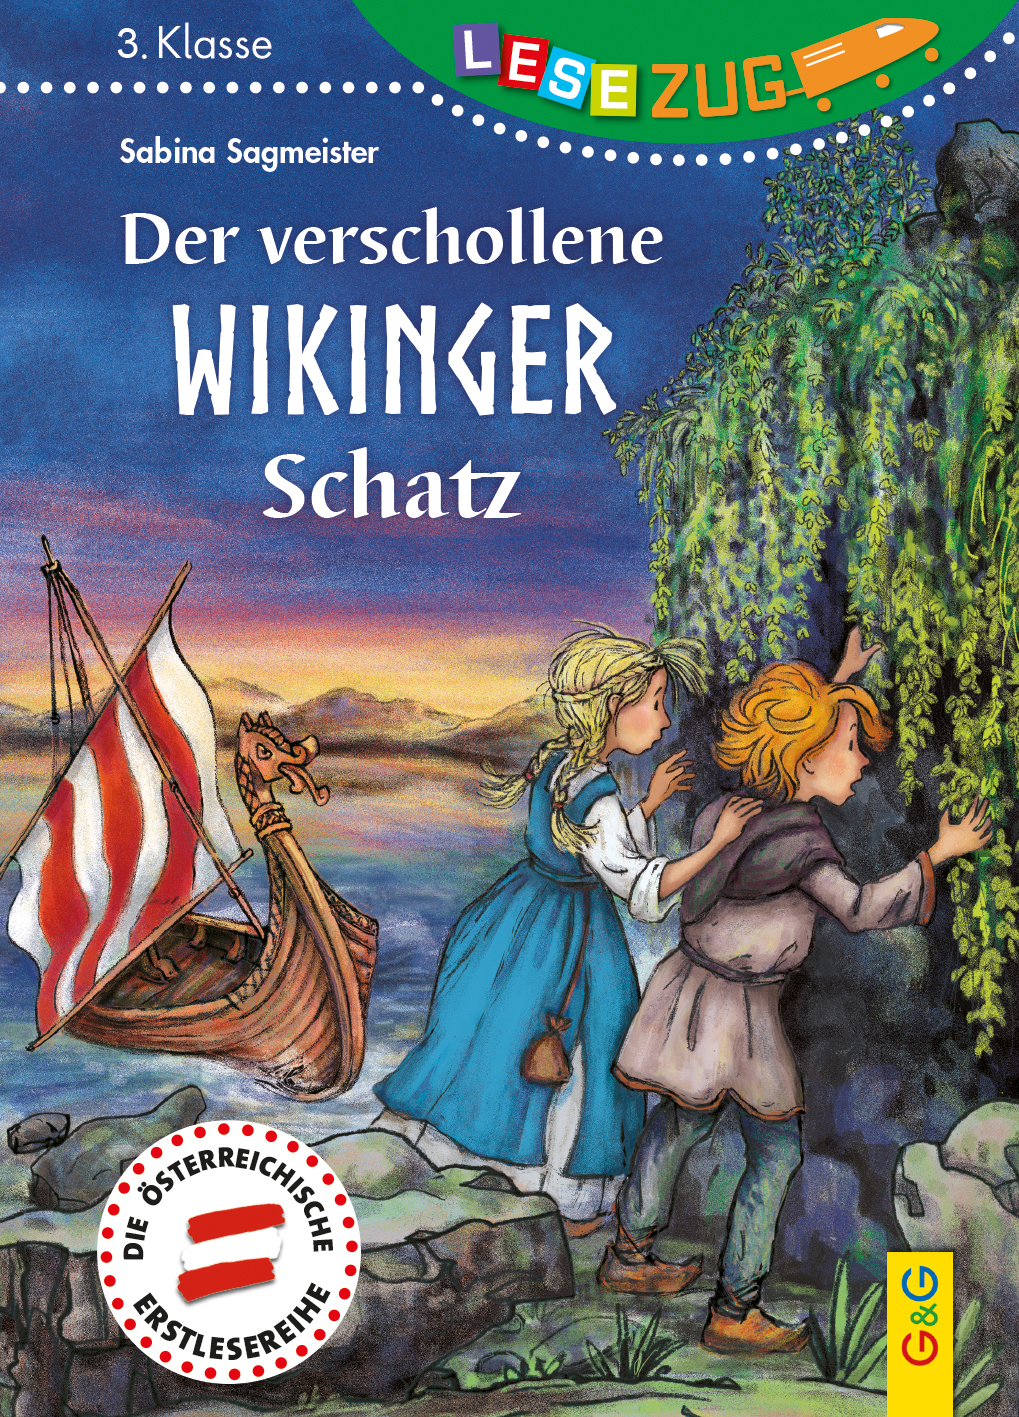 Der verschollene Wikinger Schatz Lesezug 3. Klasse von Sabina Sagmeister